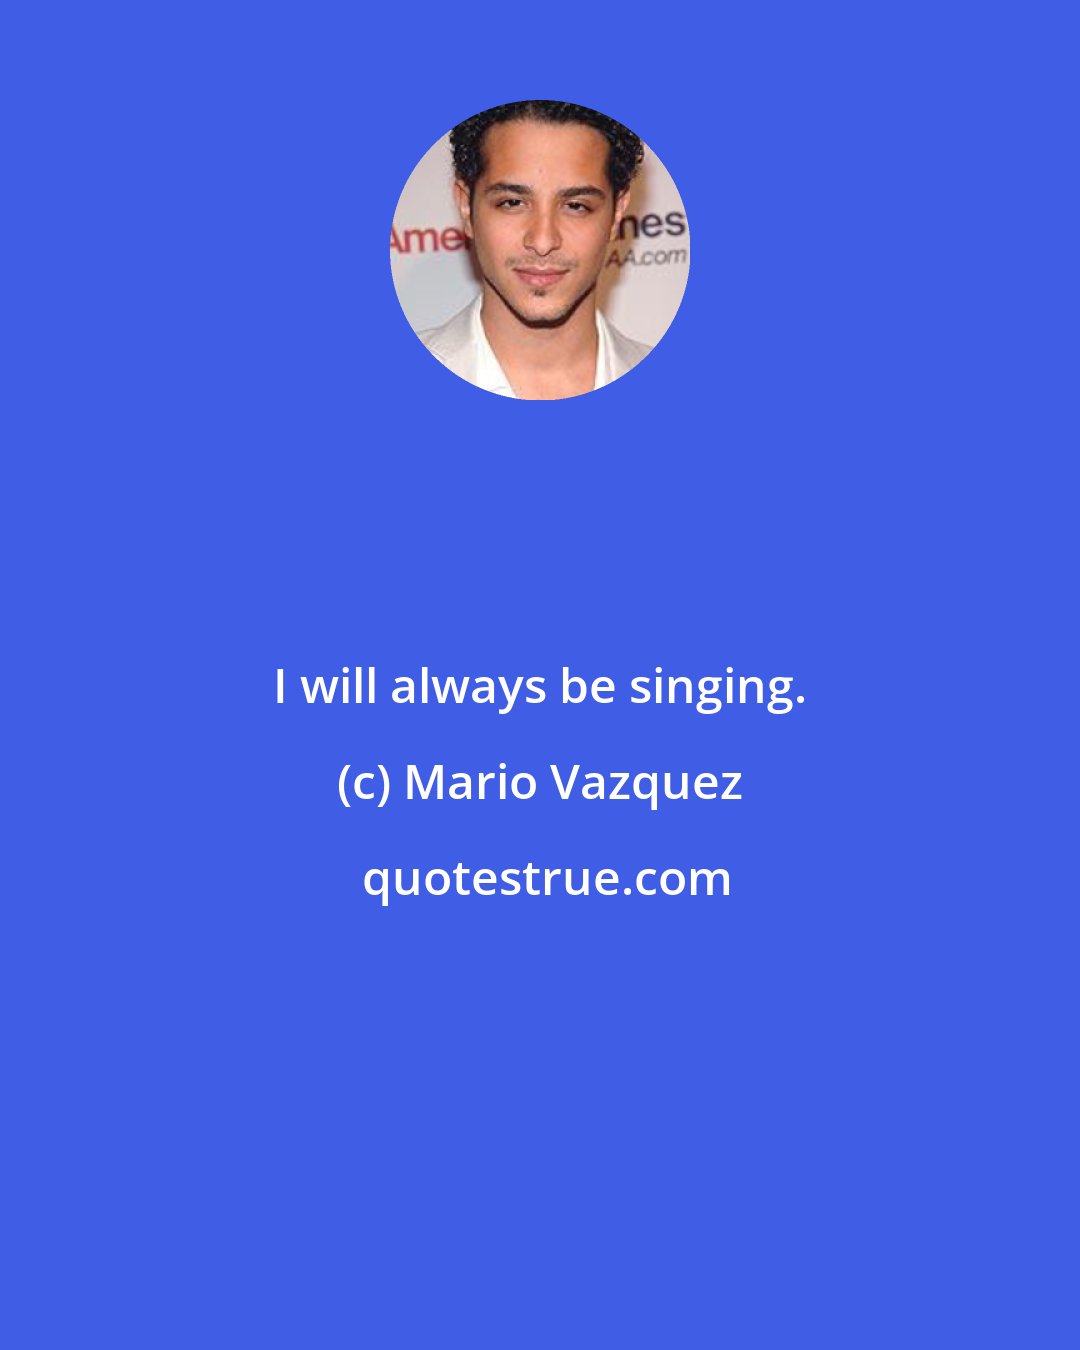 Mario Vazquez: I will always be singing.